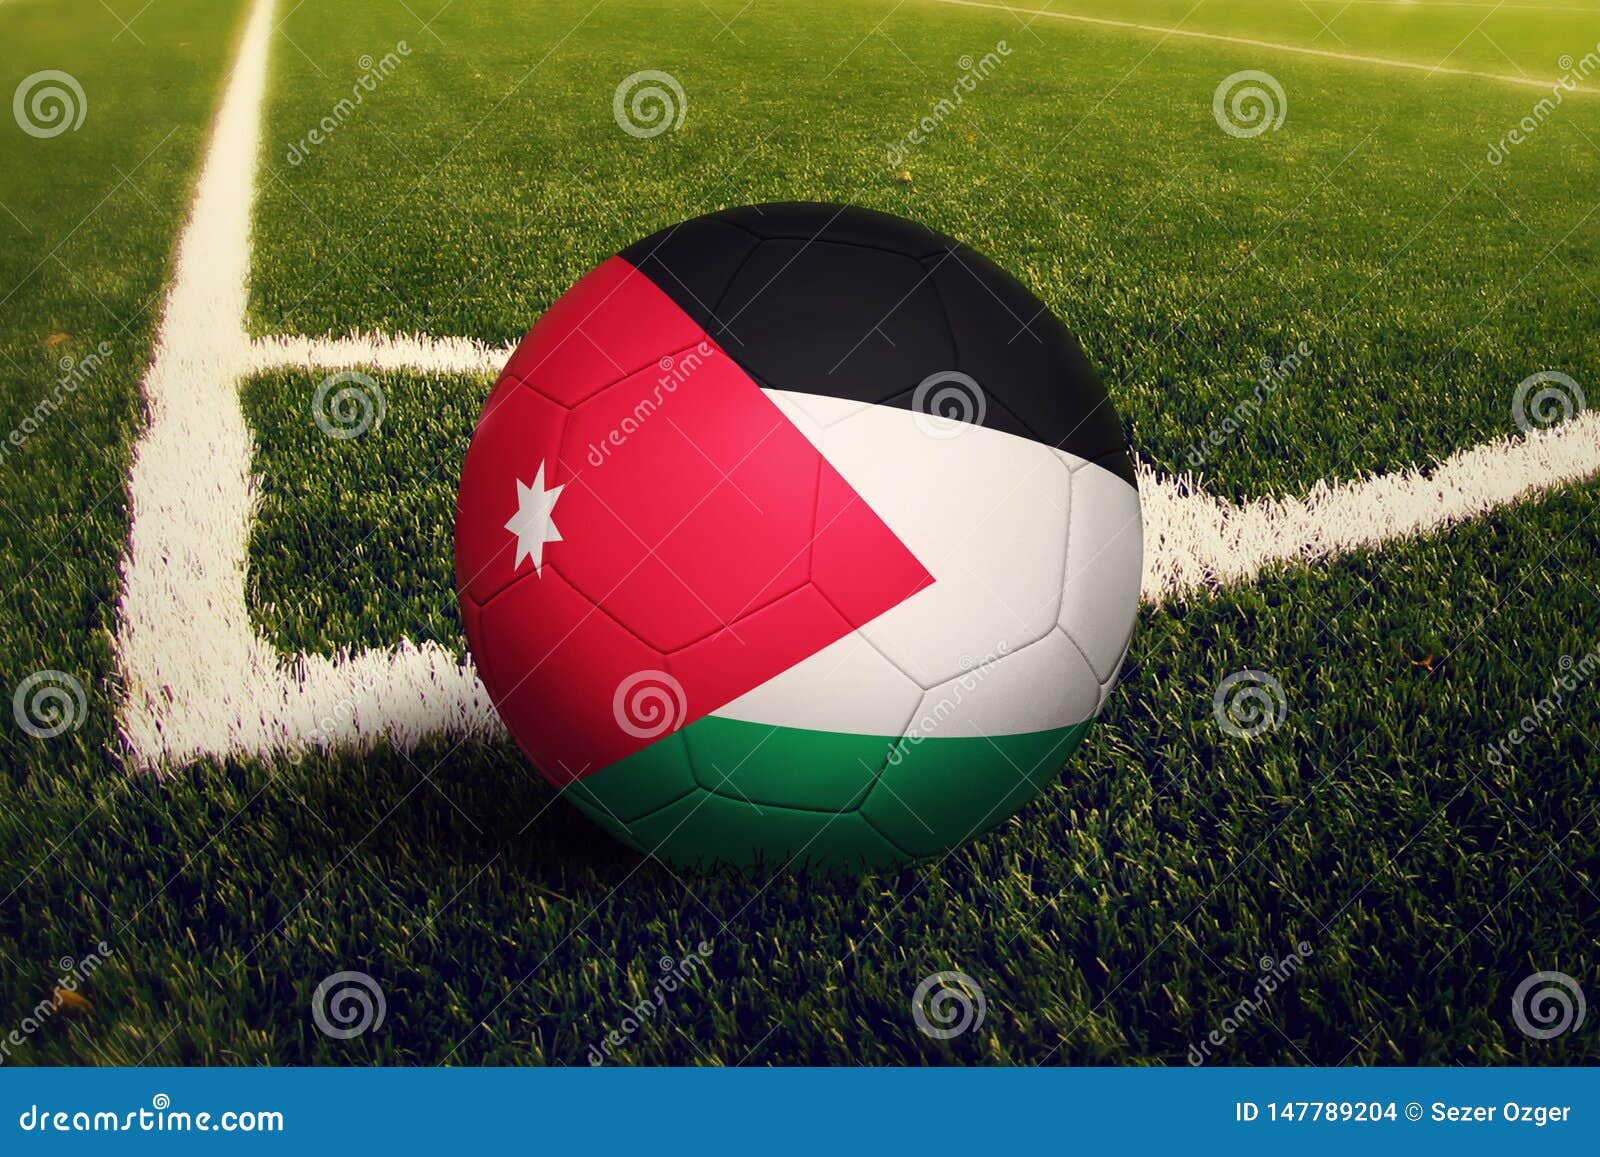 jordan futbol soccer